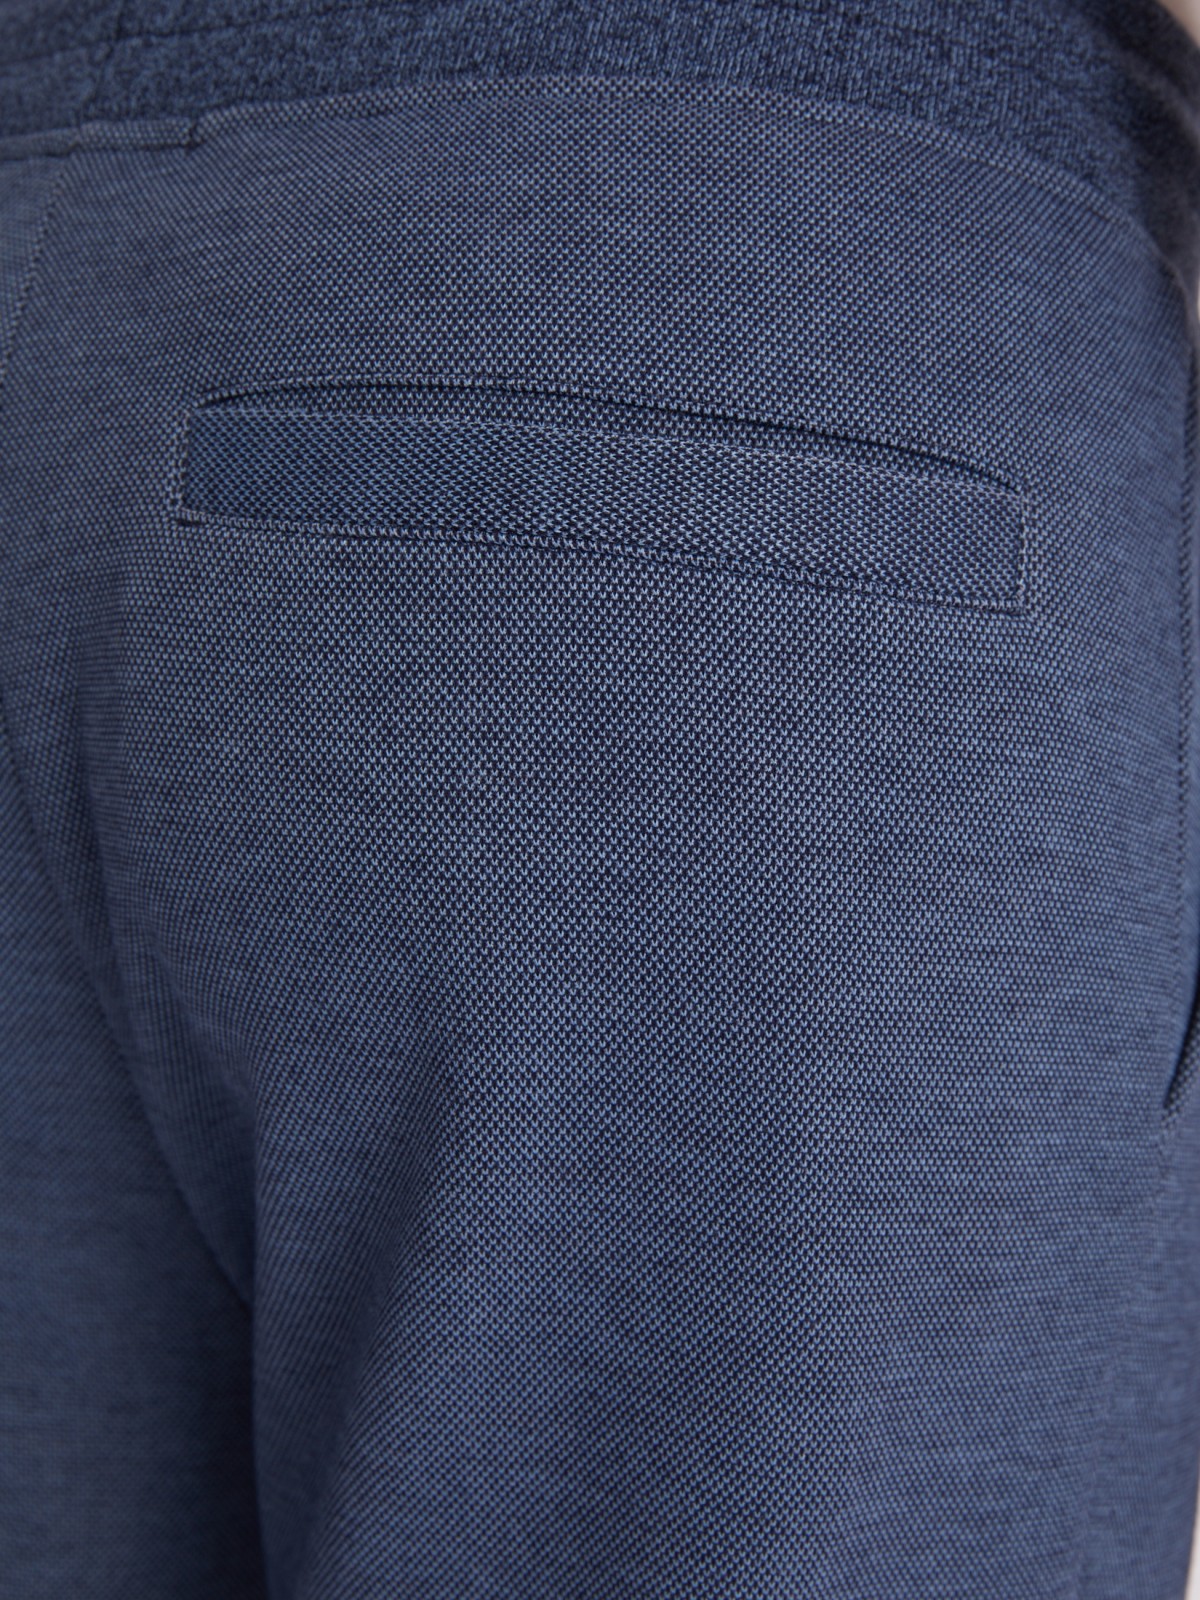 Трикотажные брюки-джоггеры в спортивном стиле zolla 213317604053, цвет голубой, размер S - фото 6